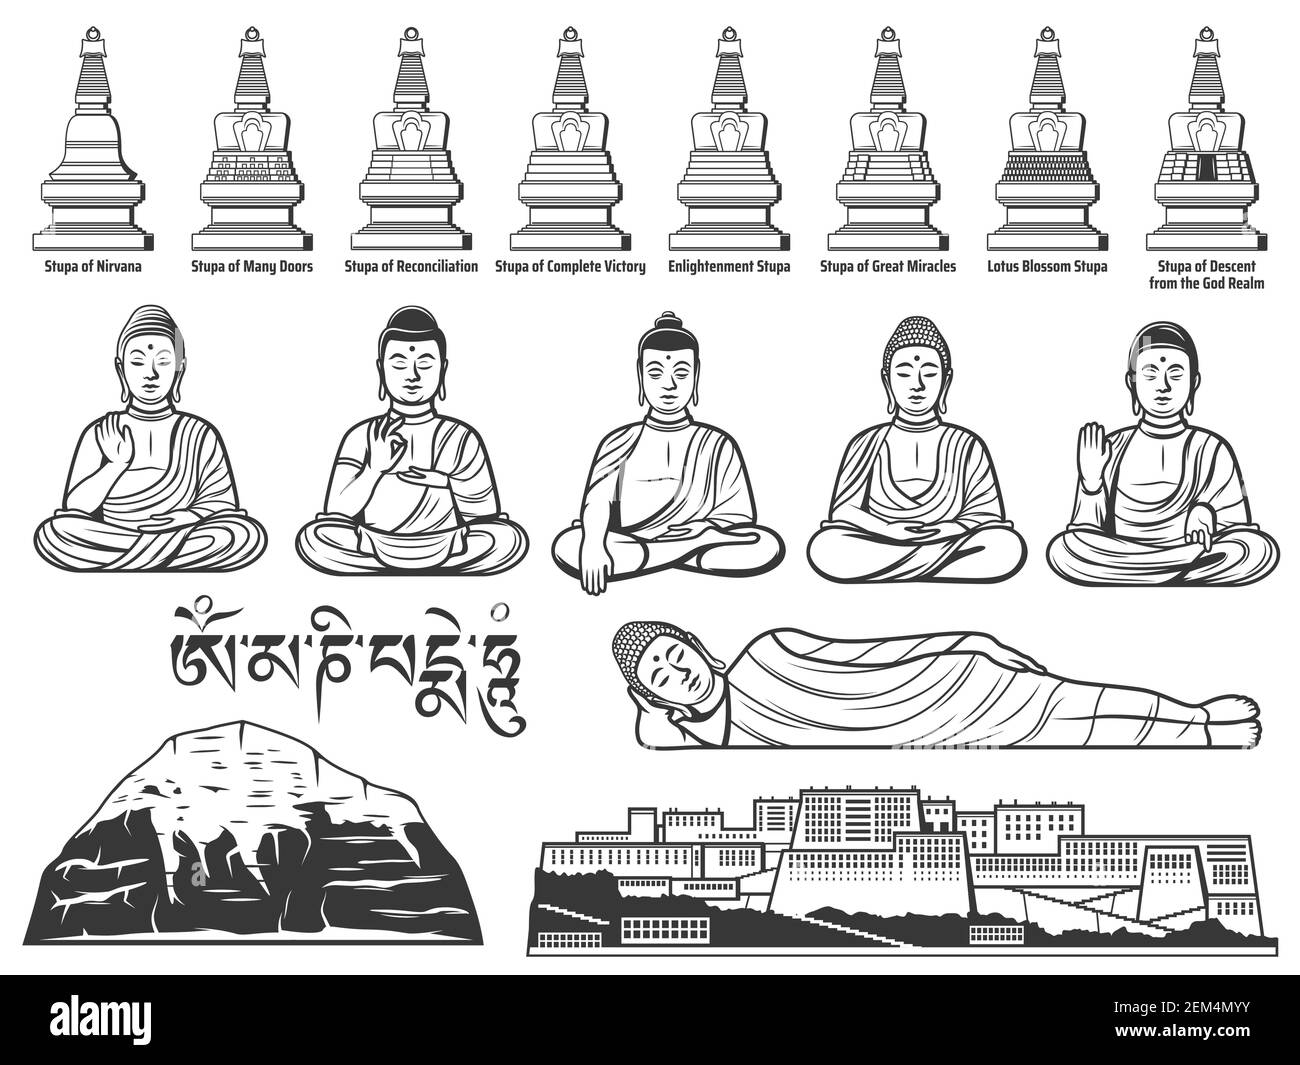 Buddhismus Religion Symbole mit Vektor-Skizzen von Buddha-Statuen mit verschiedenen Handpositionen oder Mudras, tibetisch-buddhistische große Stupas, Potala Palast Stock Vektor